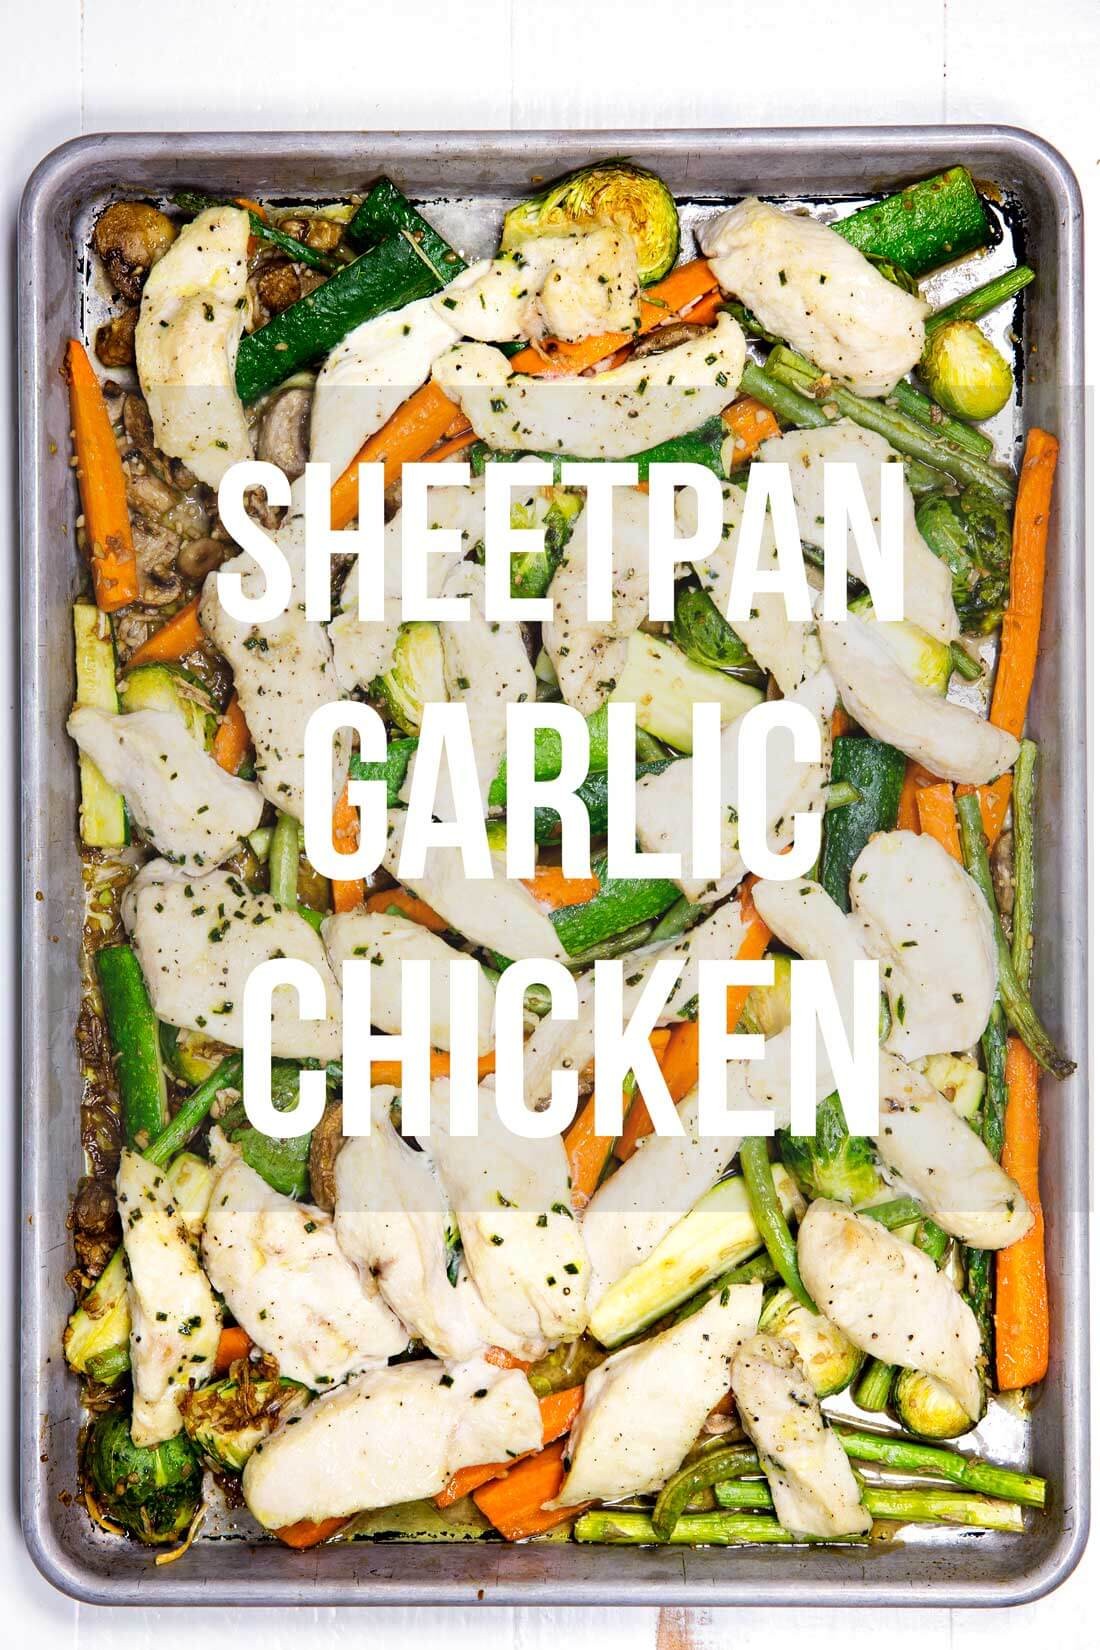 Sheet Pan Garlic Chicken & Veggies | Ginger | Copy Me That